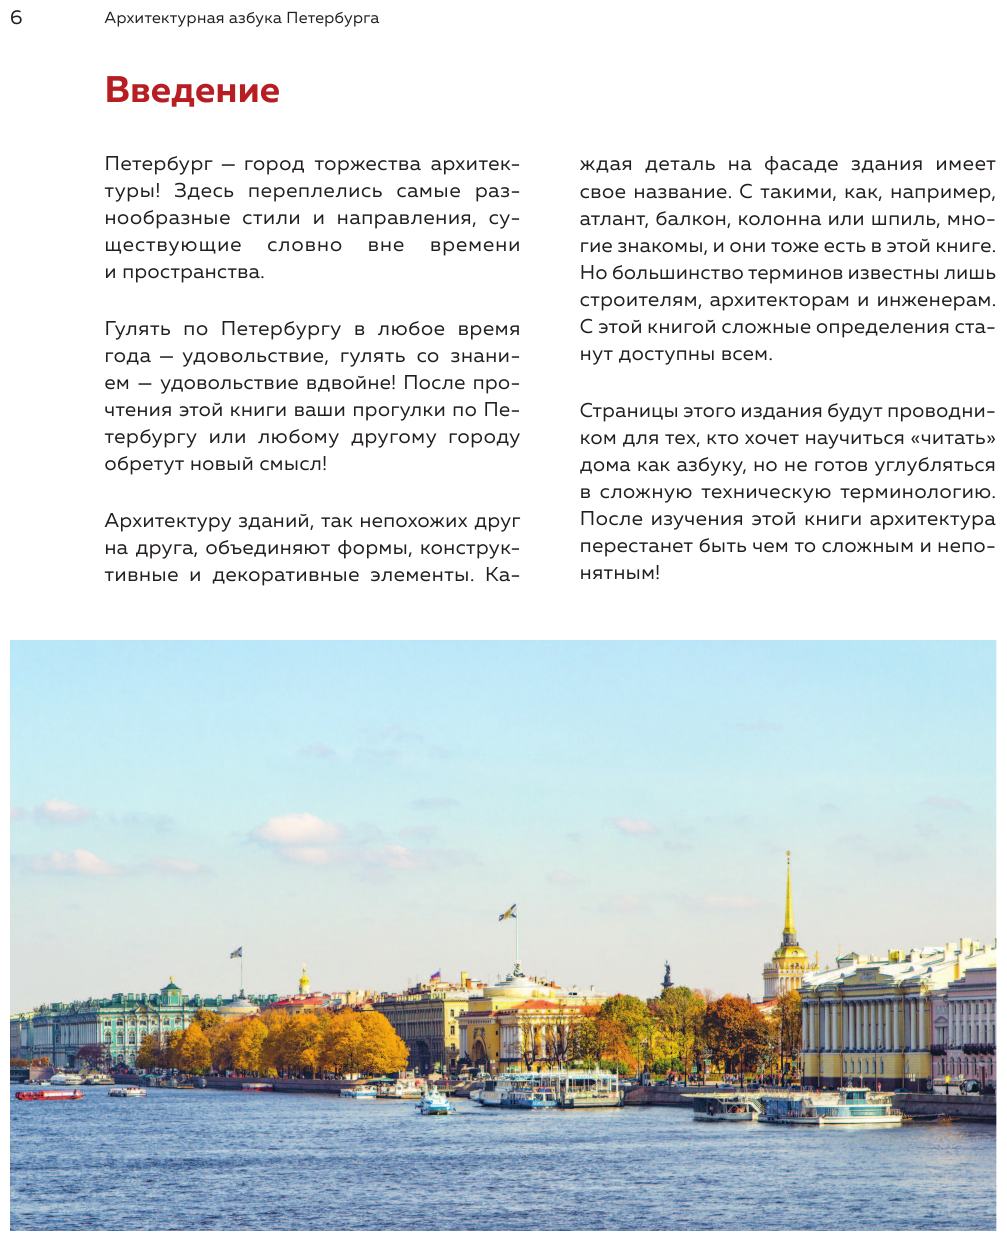 Архитектурная азбука Петербурга: от акротерия до яблока - фото №7